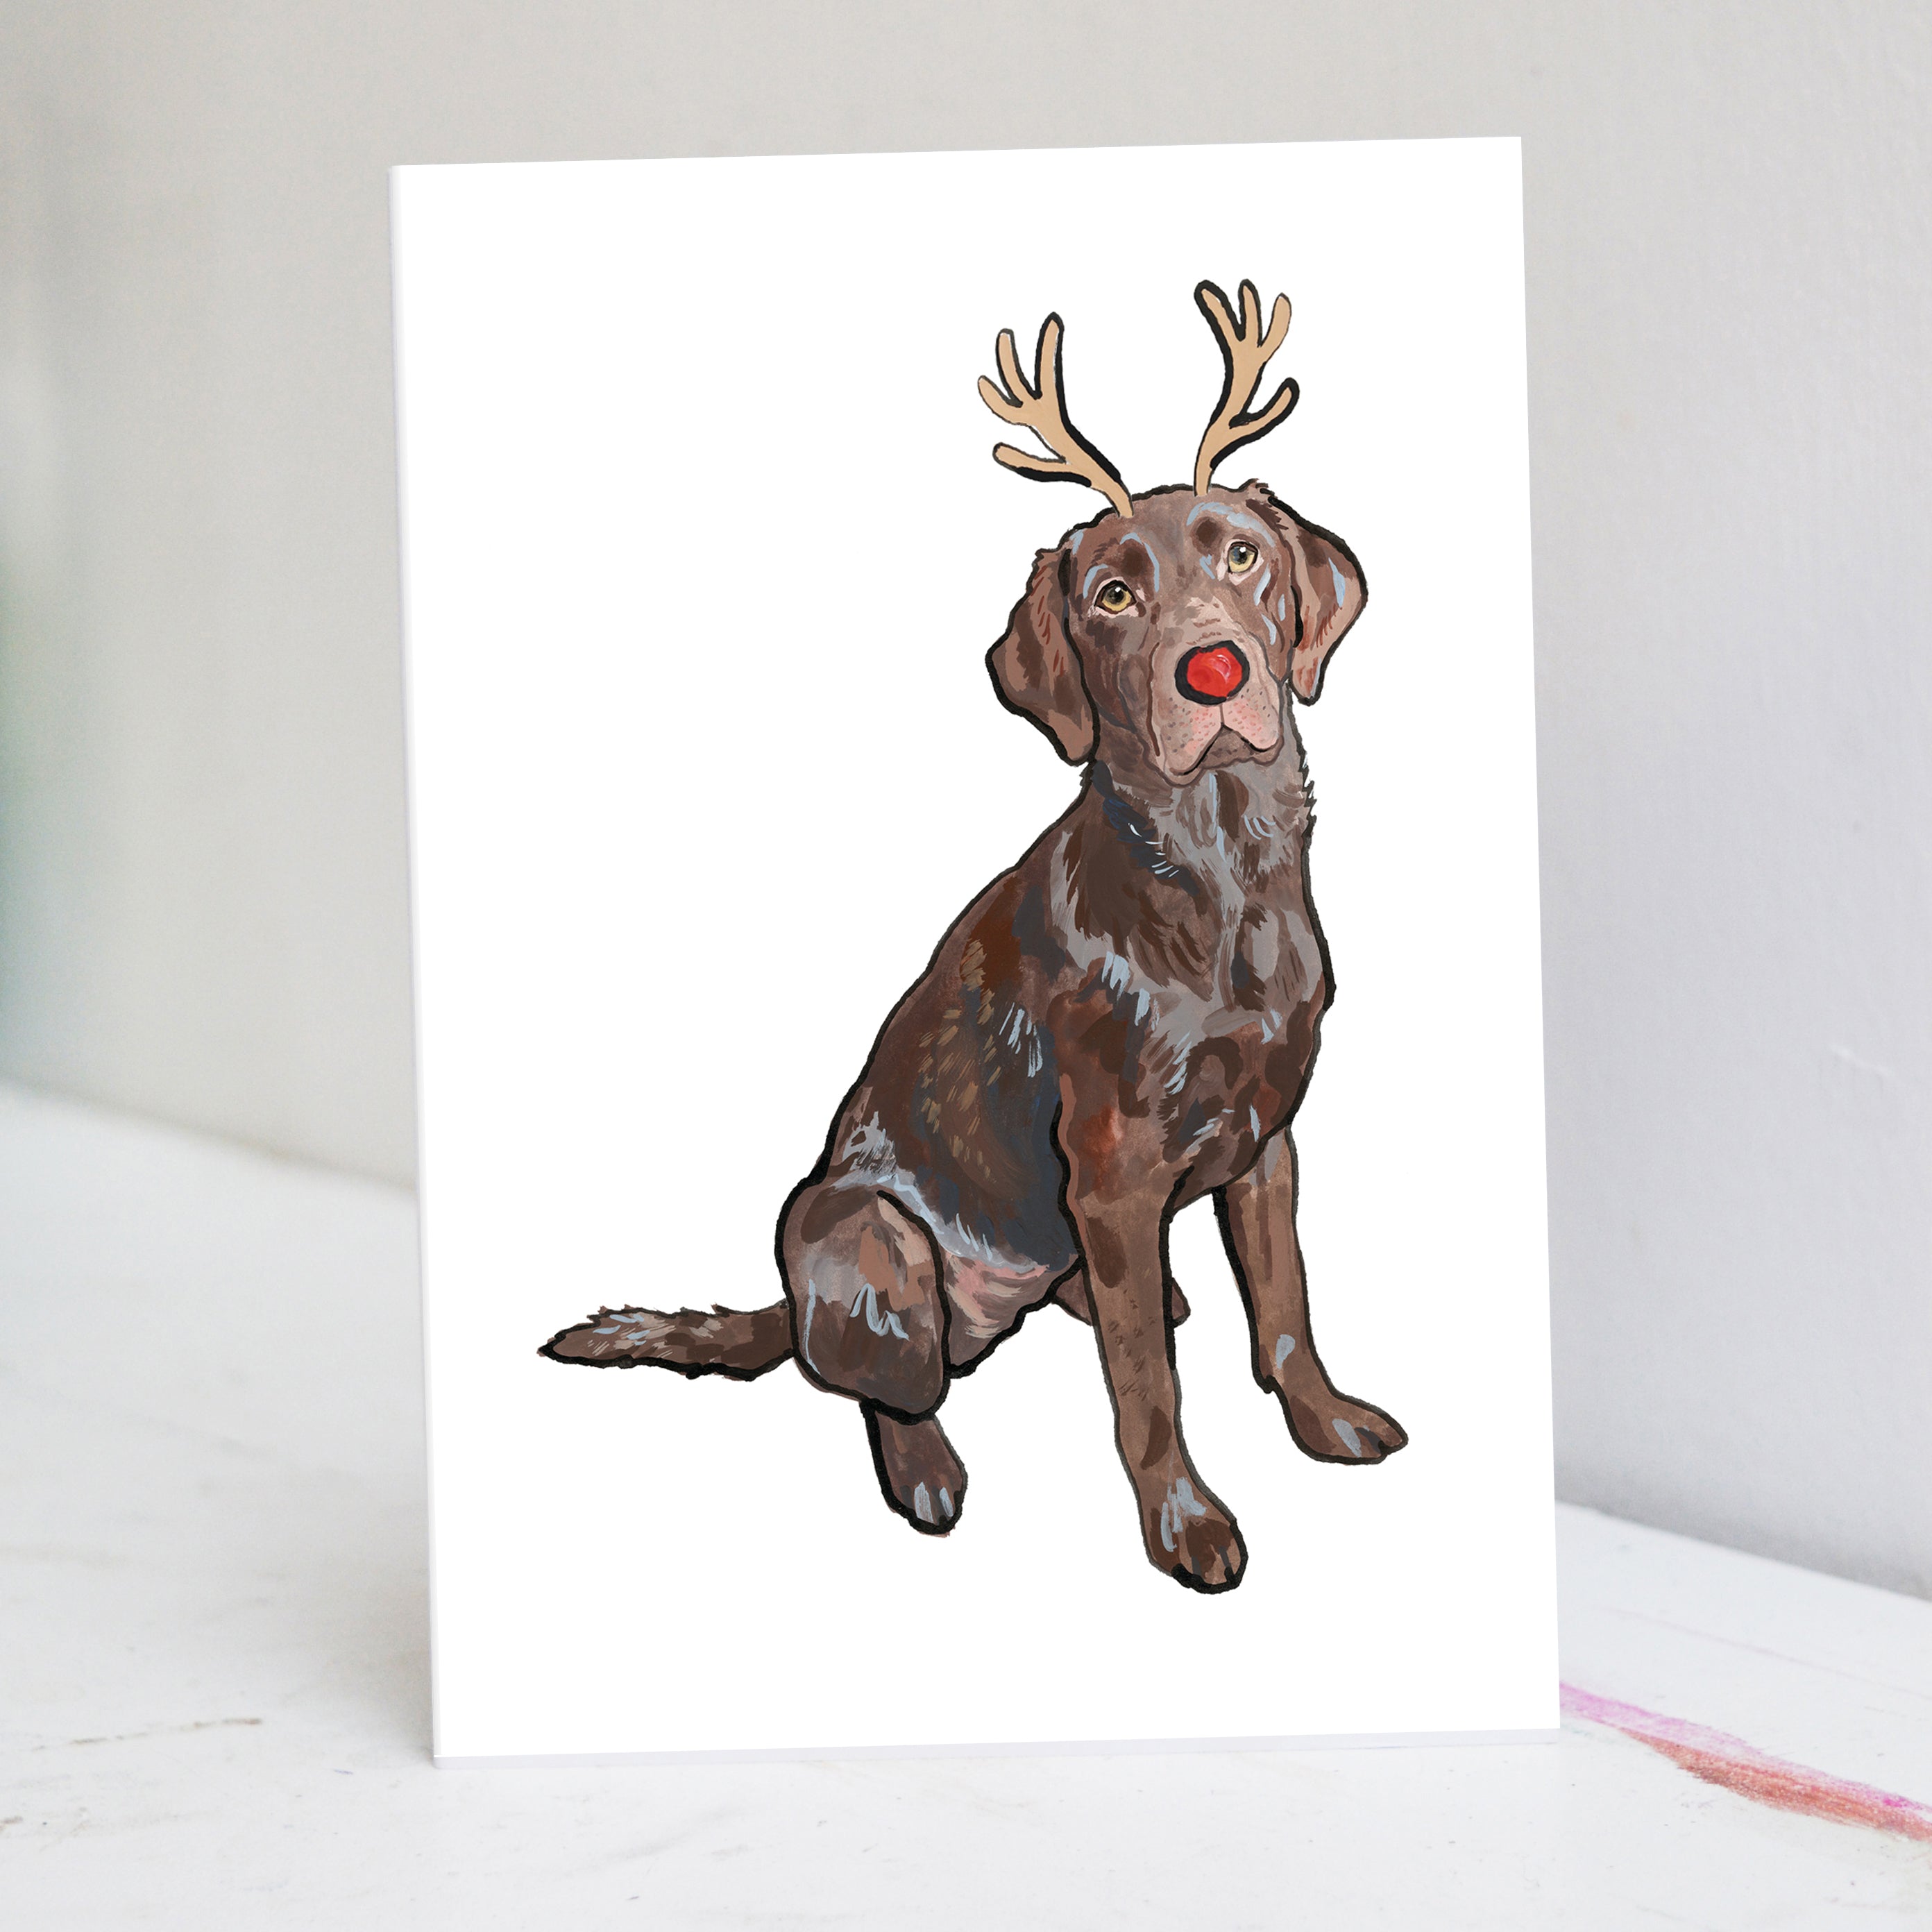 Festive Chocolate Labrador Christmas Card